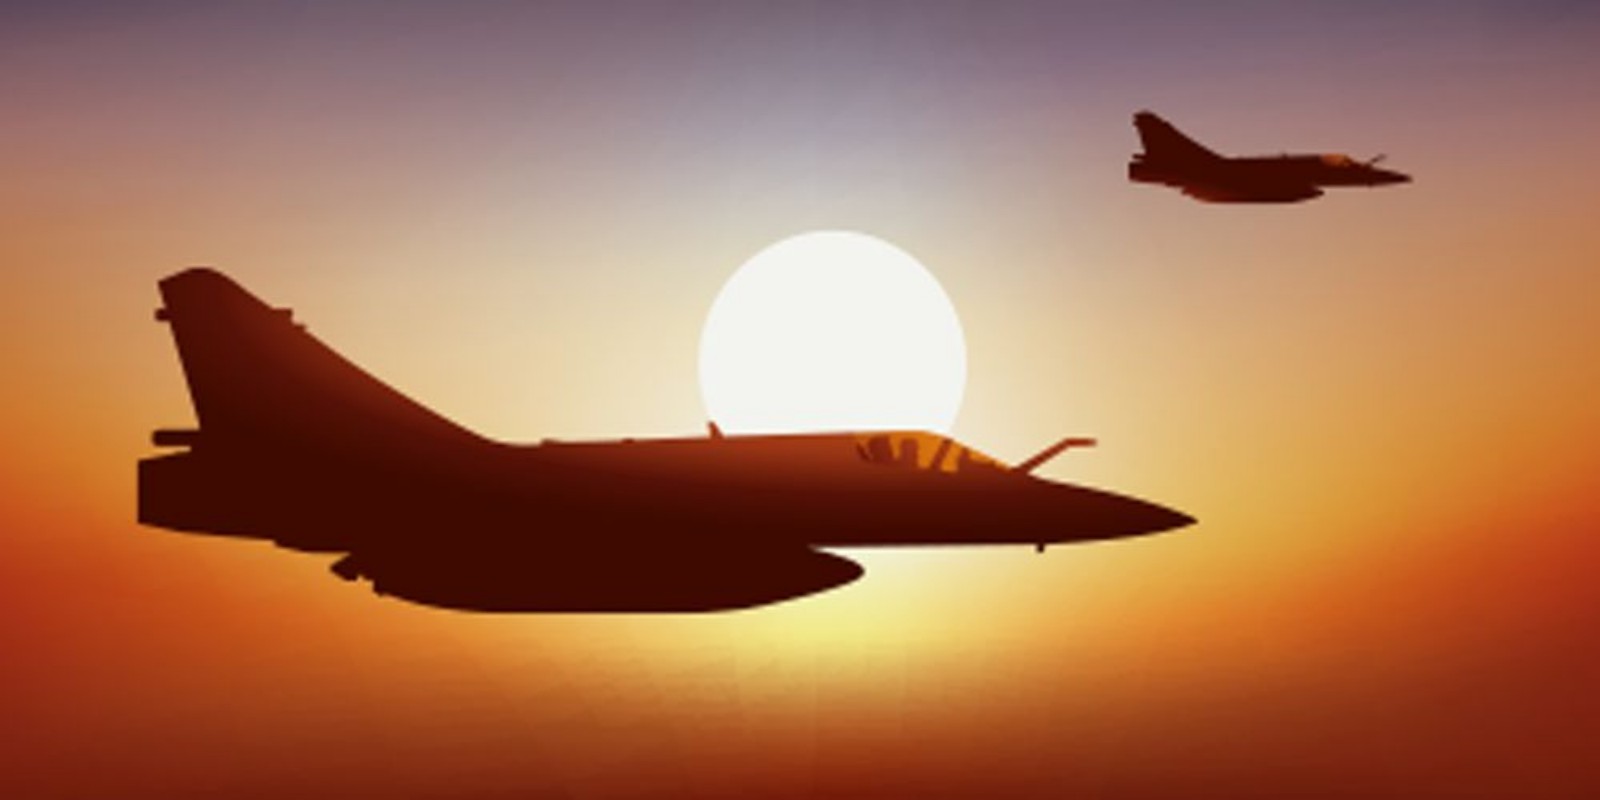 Image de Avion de chasse - Coucher de soleil